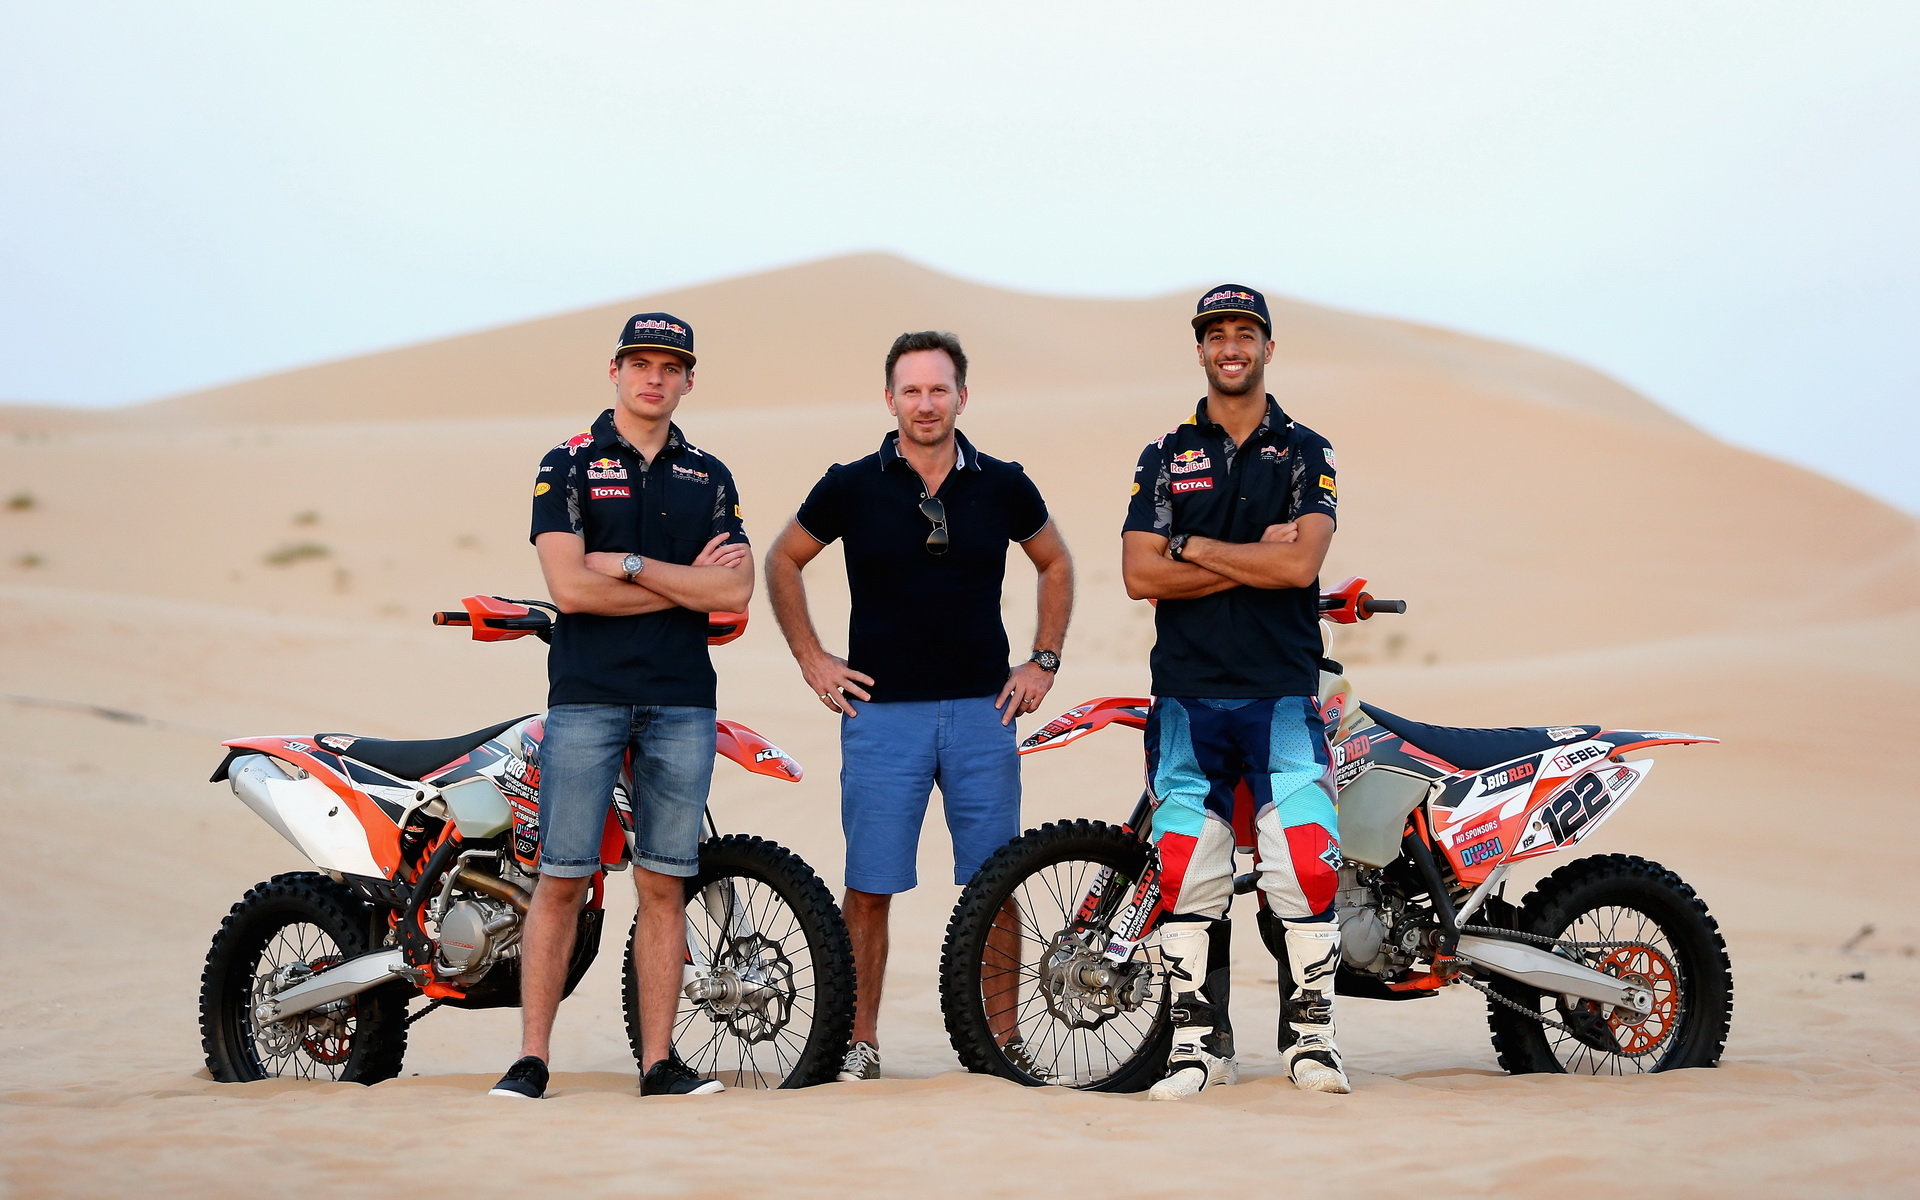 Max Verstappen, Daniel Ricciardo a Christian Horner při roadshow v poušti v Abú Zabí